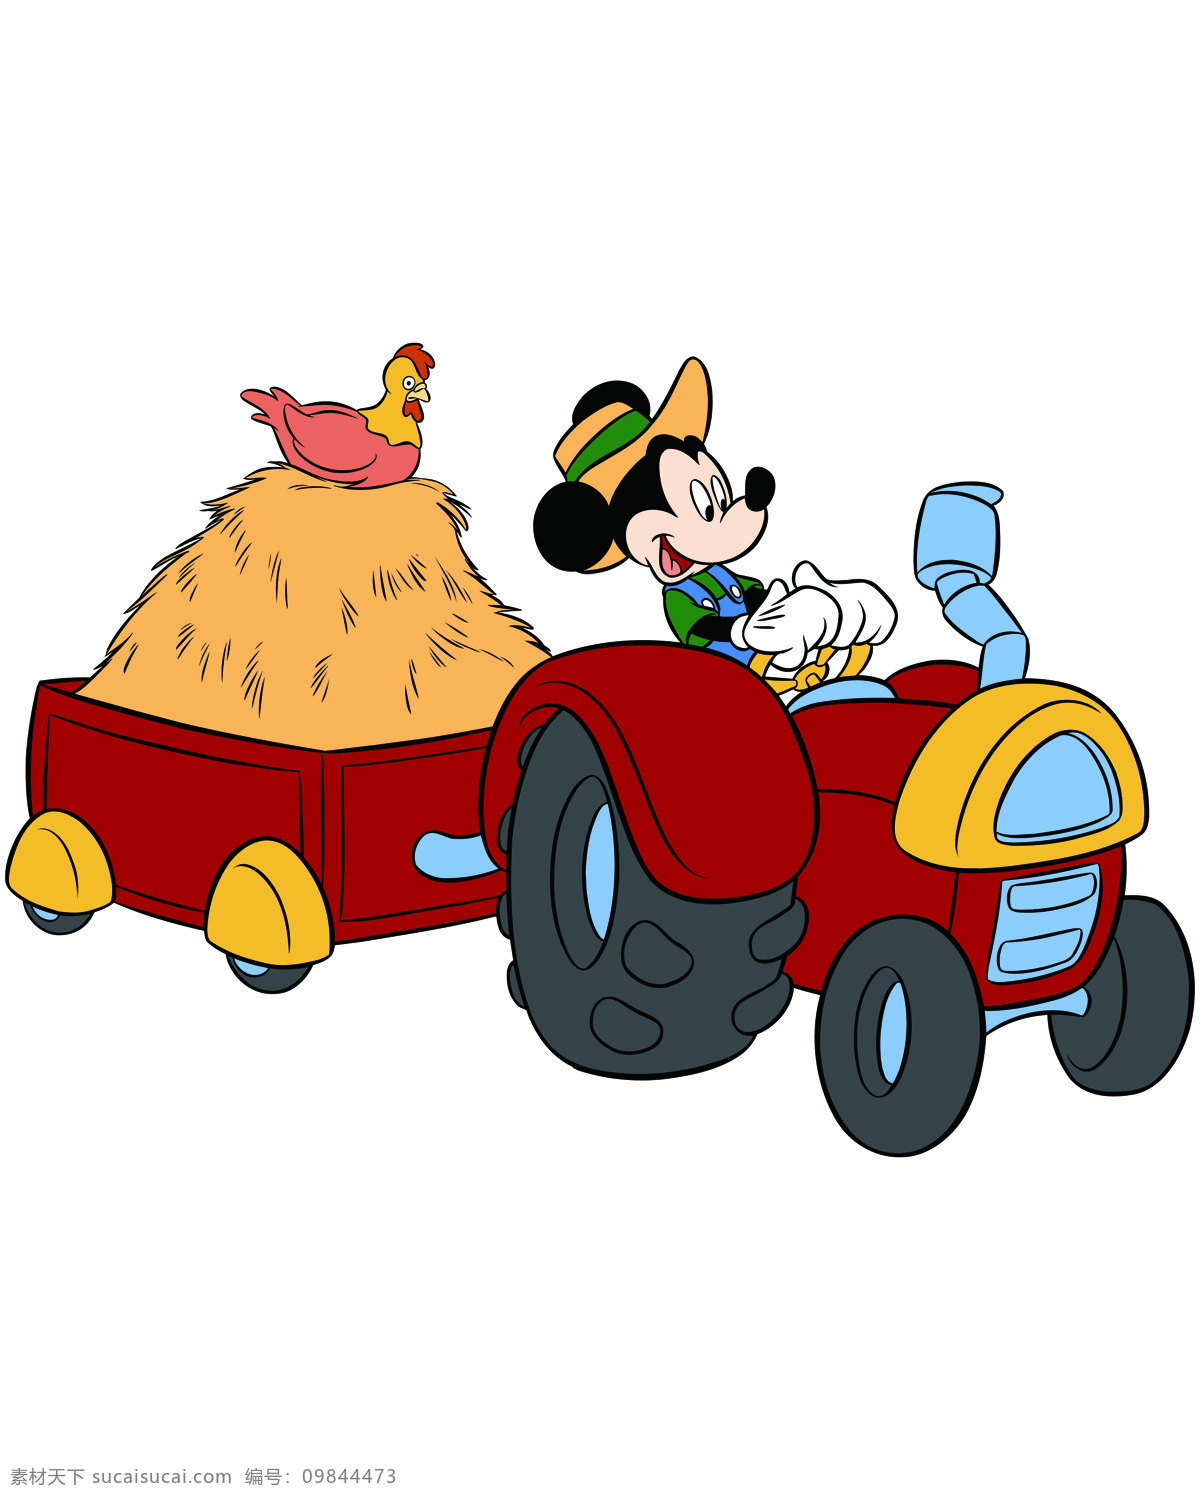 米奇开拖拉机 米奇 开拖拉机 迪士尼 卡通 经典卡通 米老鼠